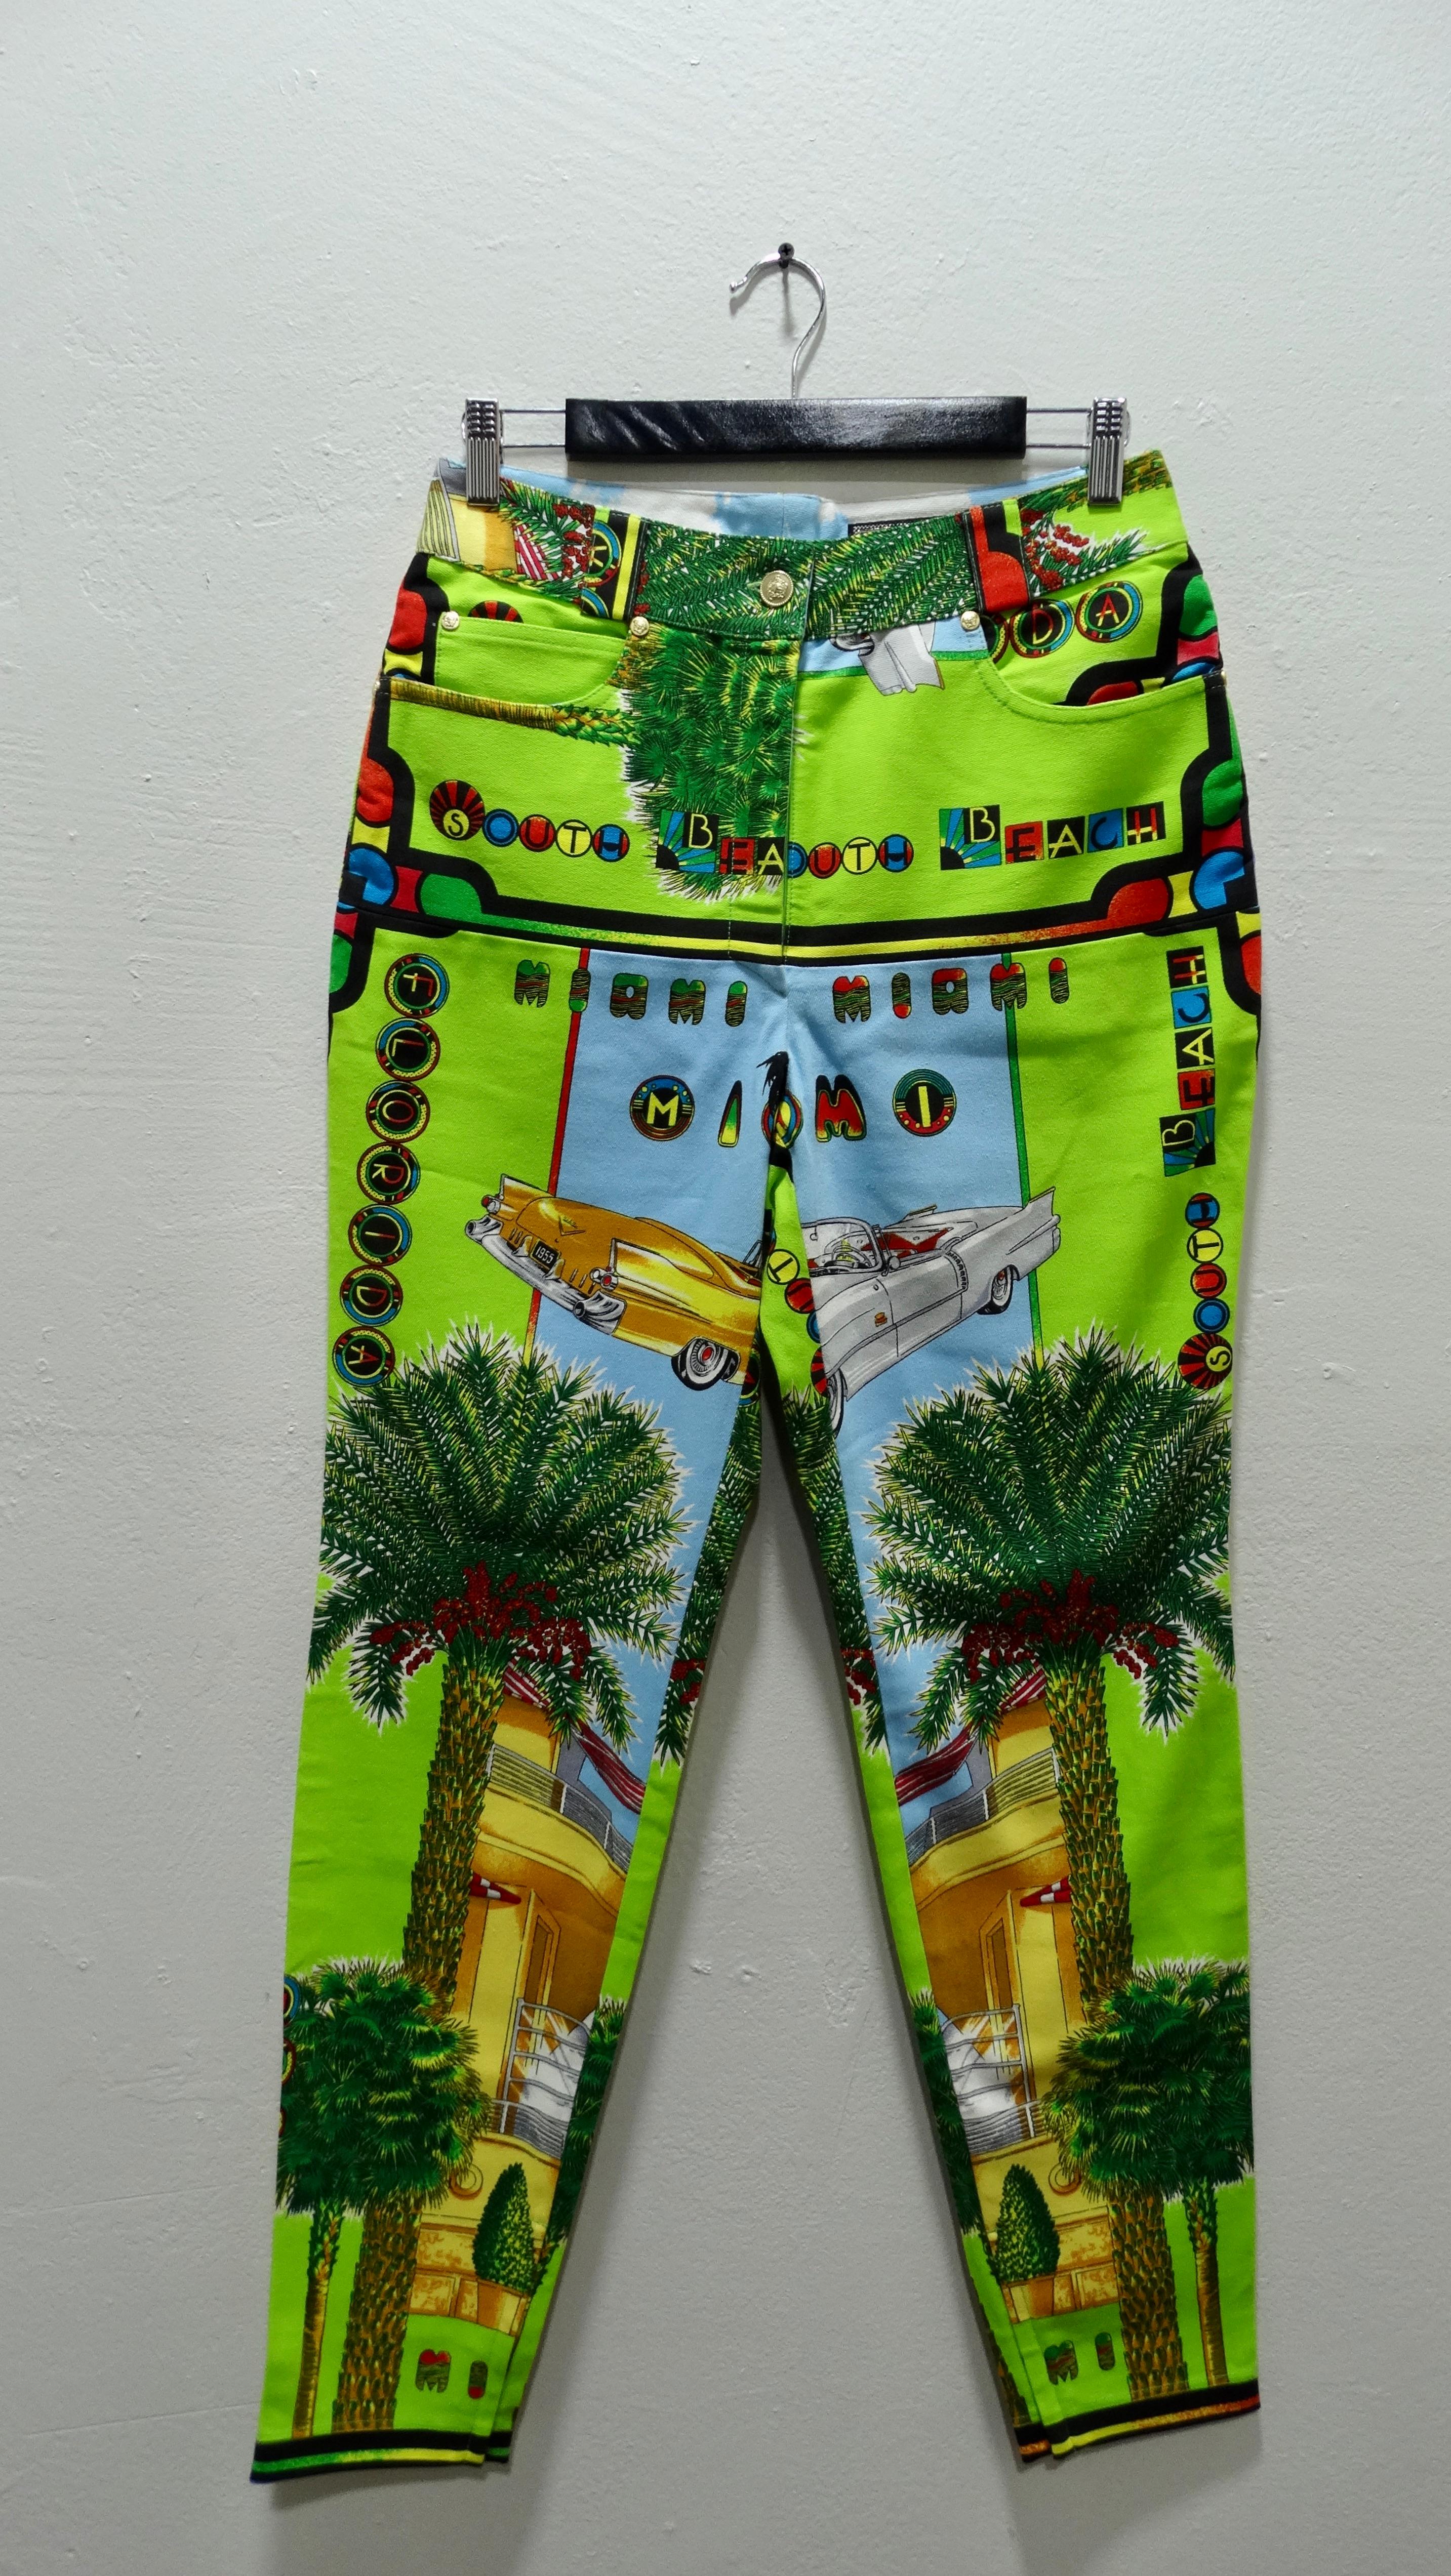 Ressentez la chaleur de Miami dans ce jean de Gianni Versace Couture ! Datant des années 1990, ce pantalon tendance fera sûrement tourner les têtes et sera le complément parfait de votre garde-robe cet été ! Cet imprimé présente des couleurs néon et